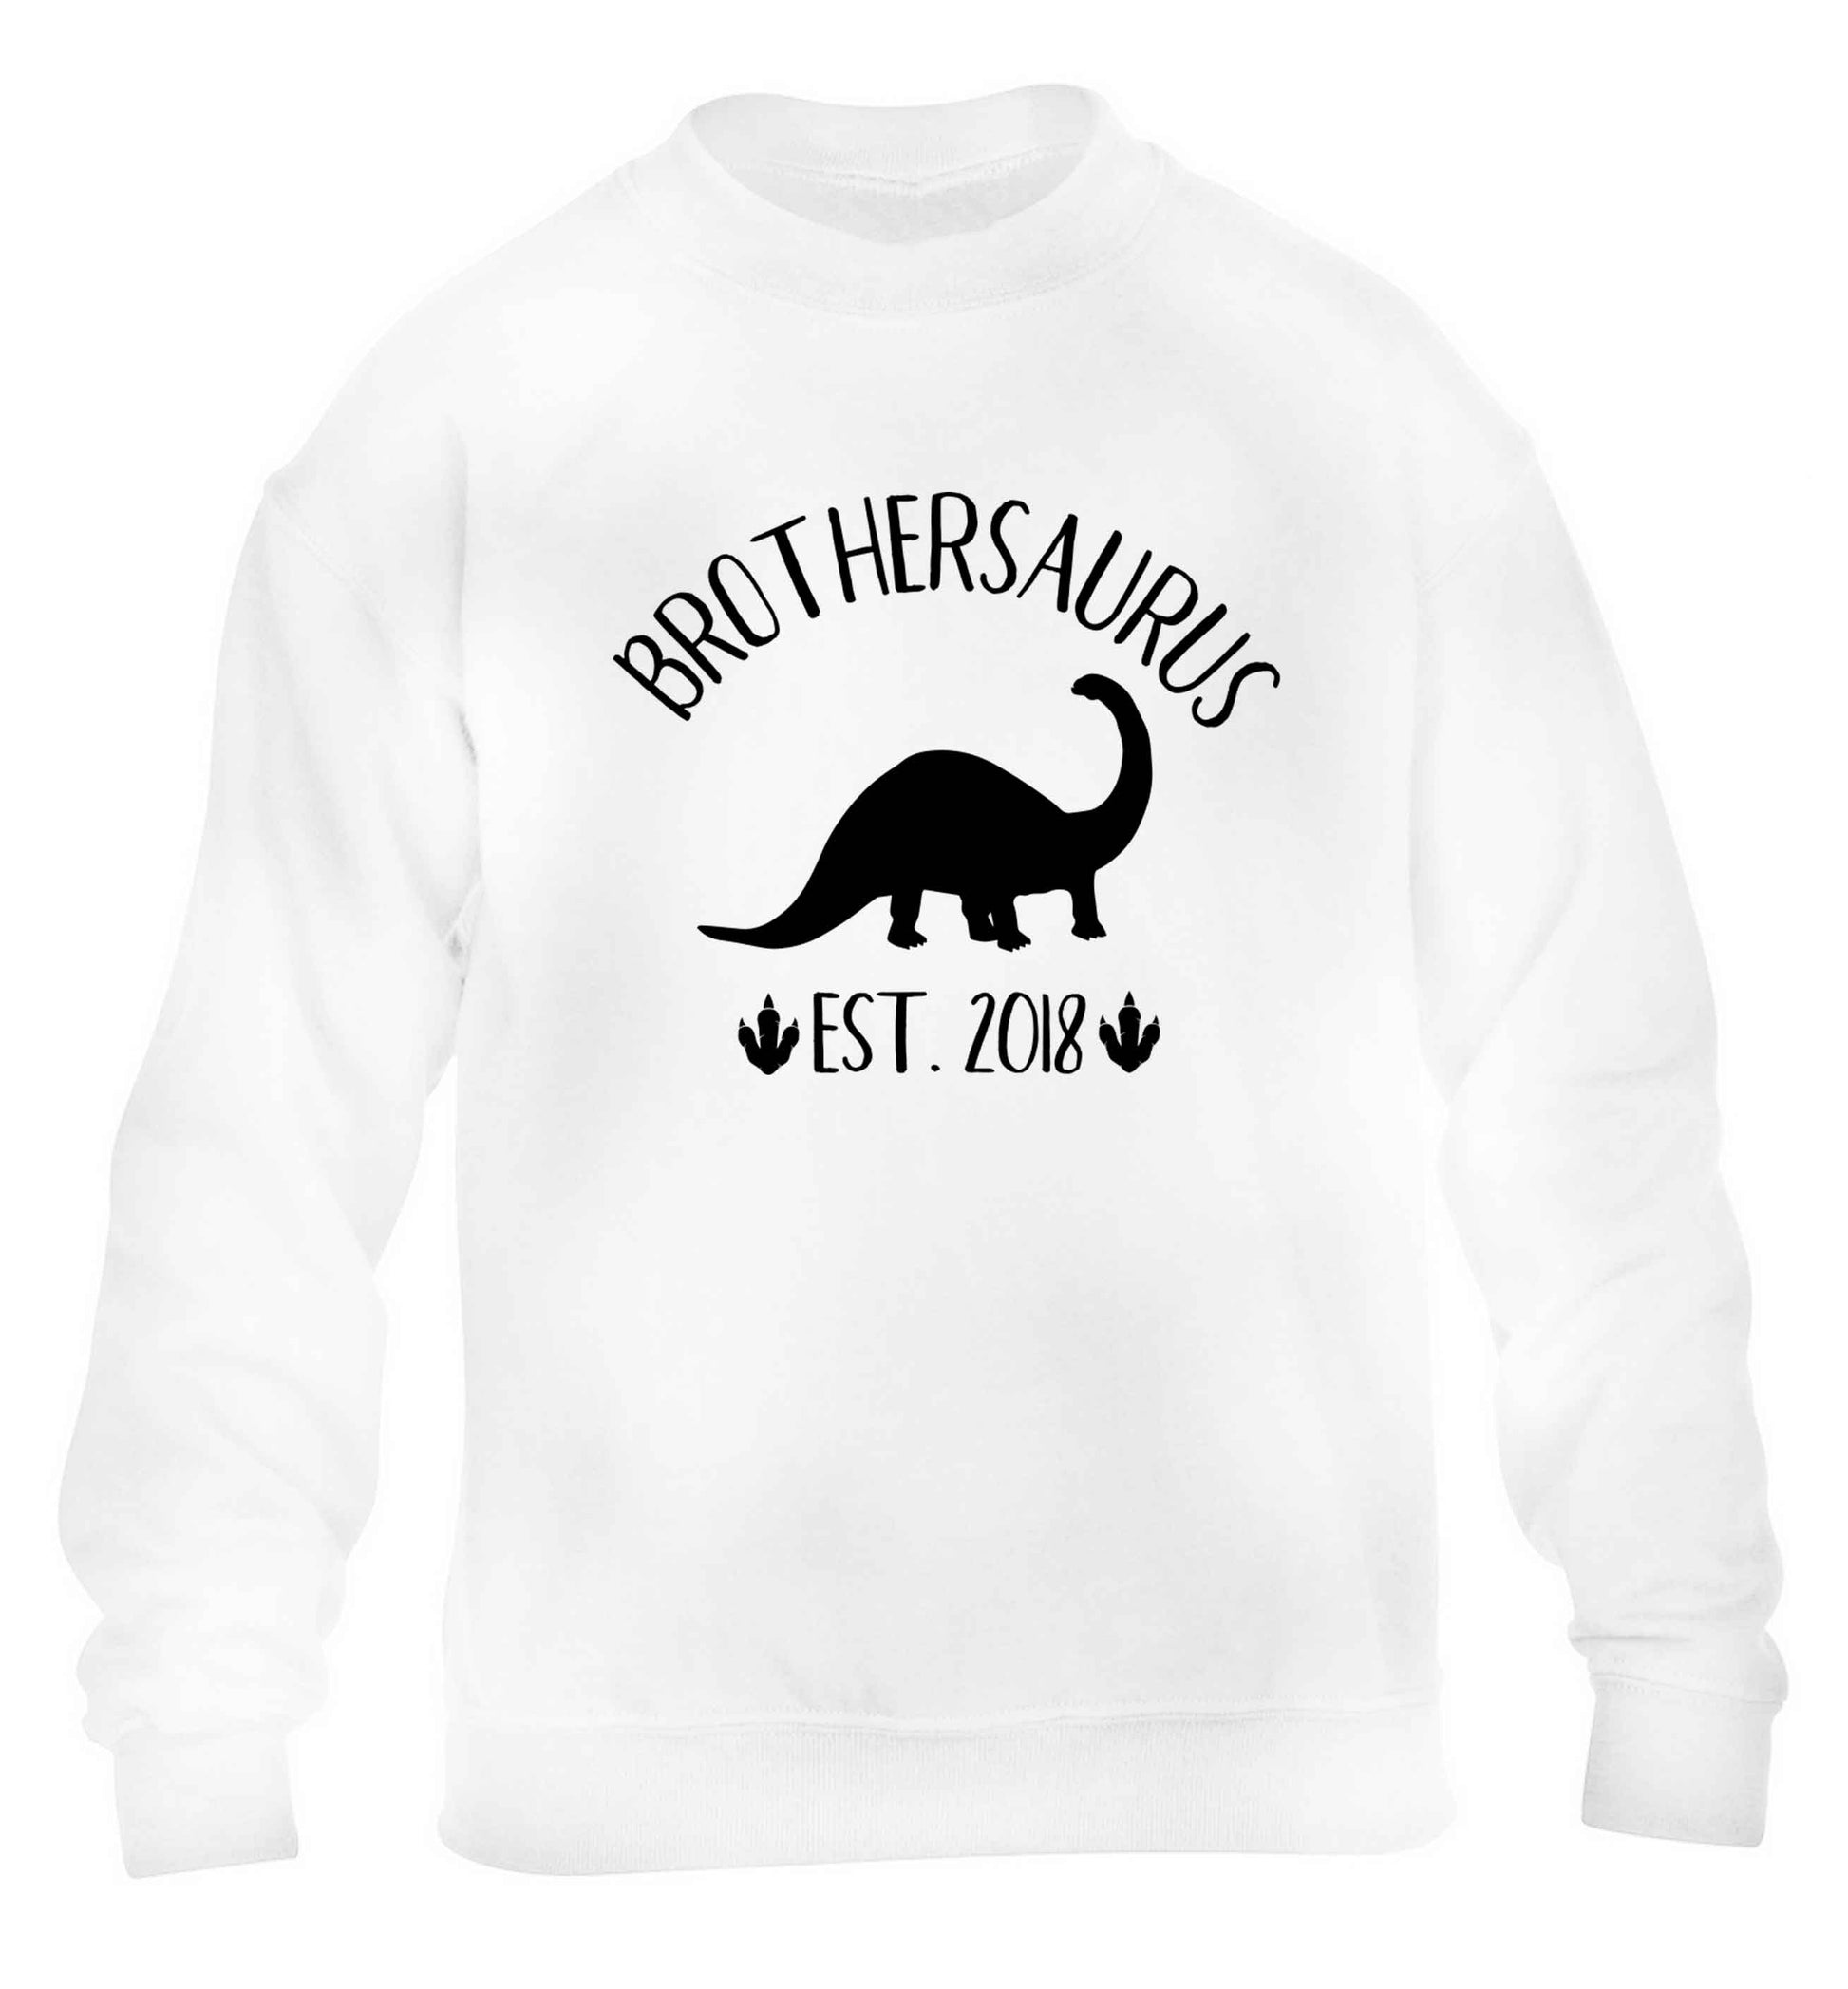 Personalised brothersaurus since (custom date) children's white sweater 12-13 Years